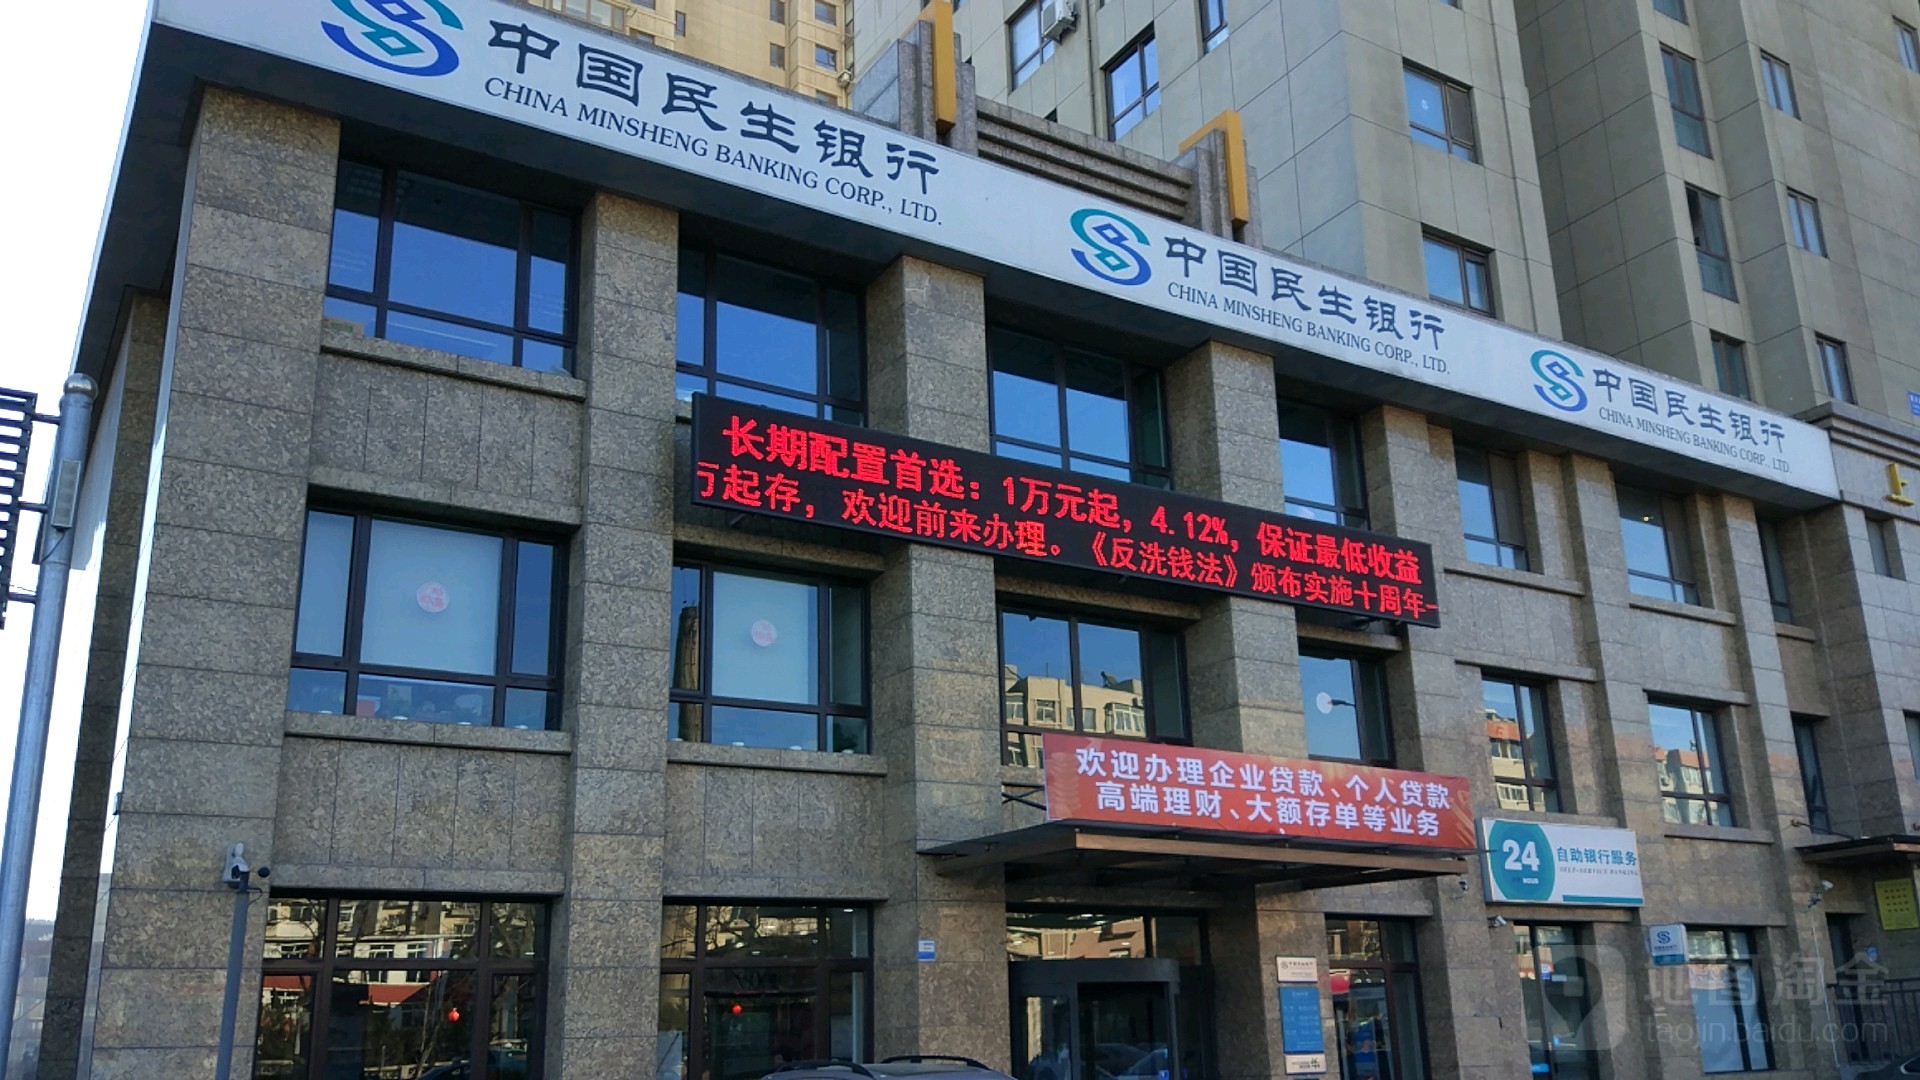 中国民生银行24小时自助银行((大连马栏广场支行)